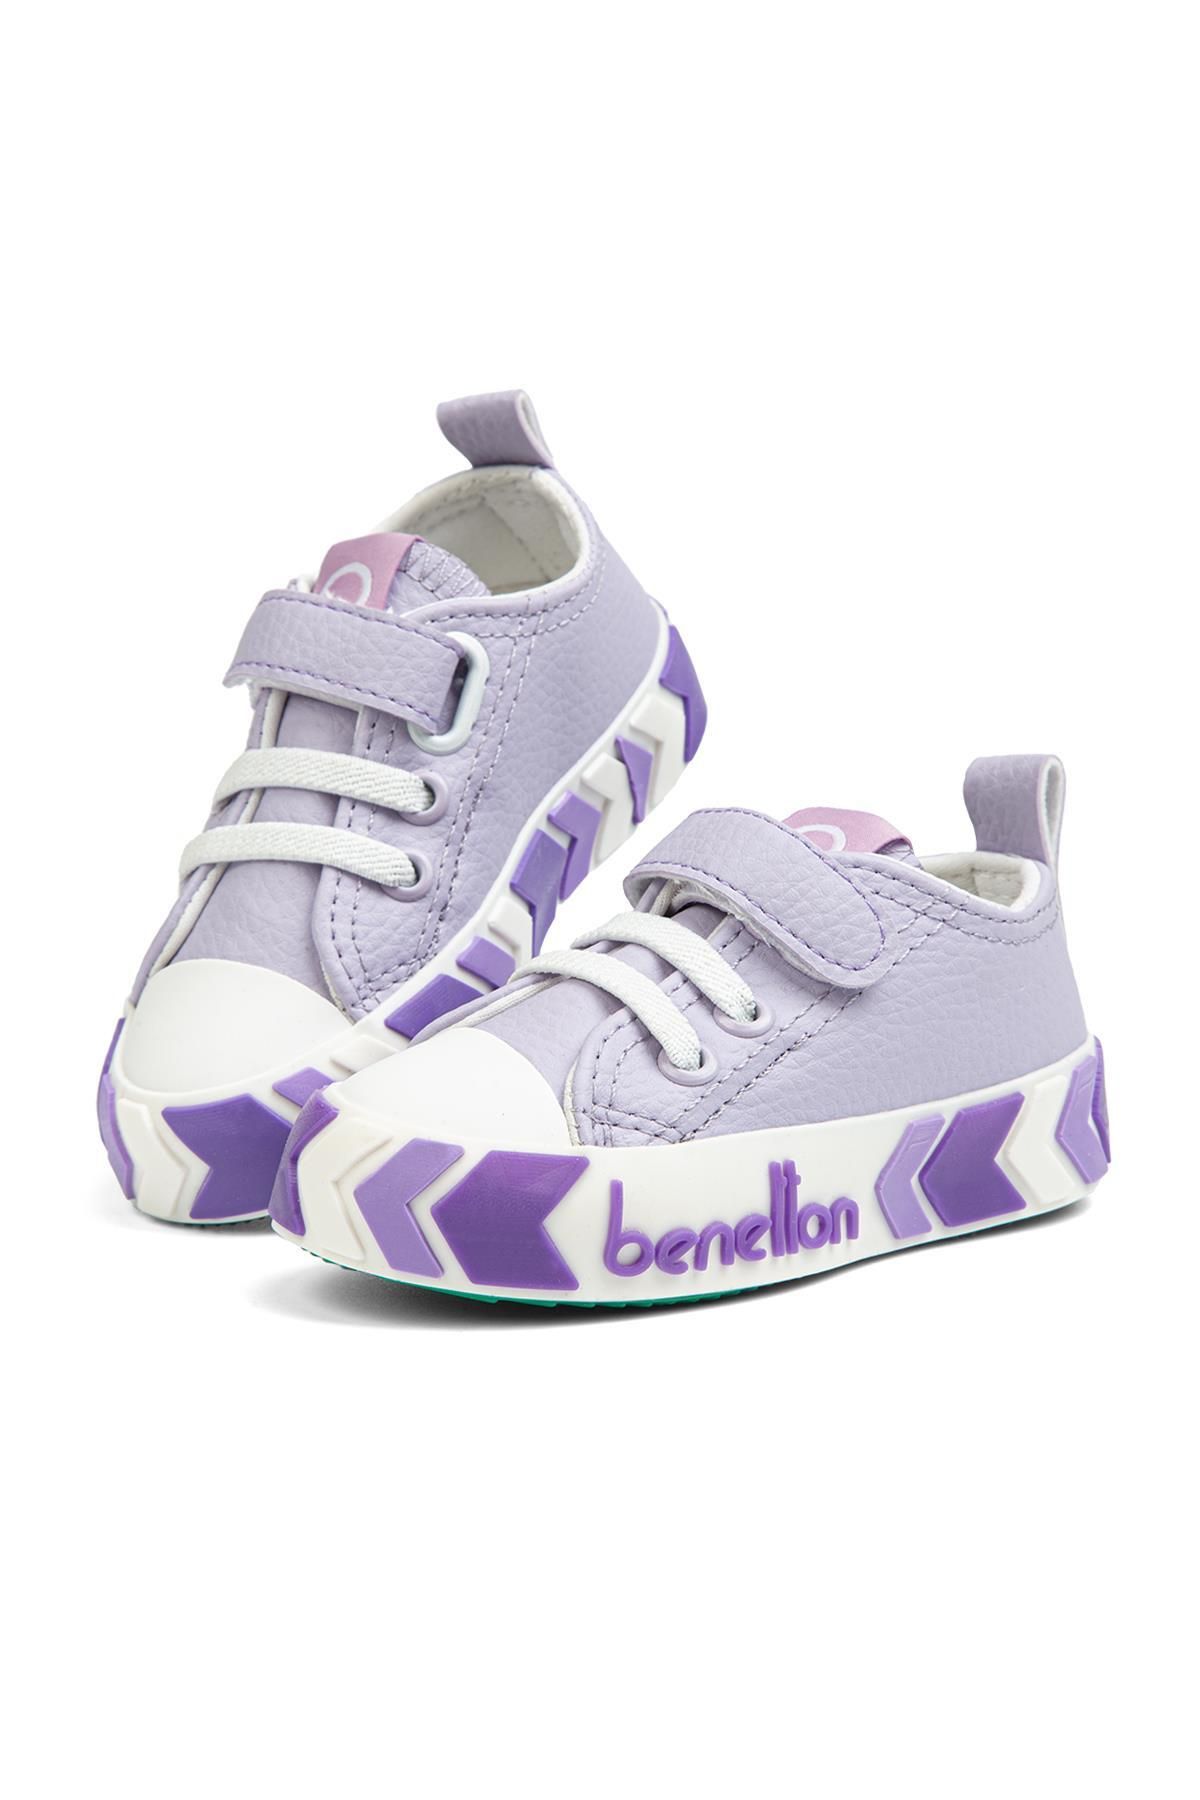 Benetton ® | BN-30804- Lila - Çocuk Spor Ayakkabı